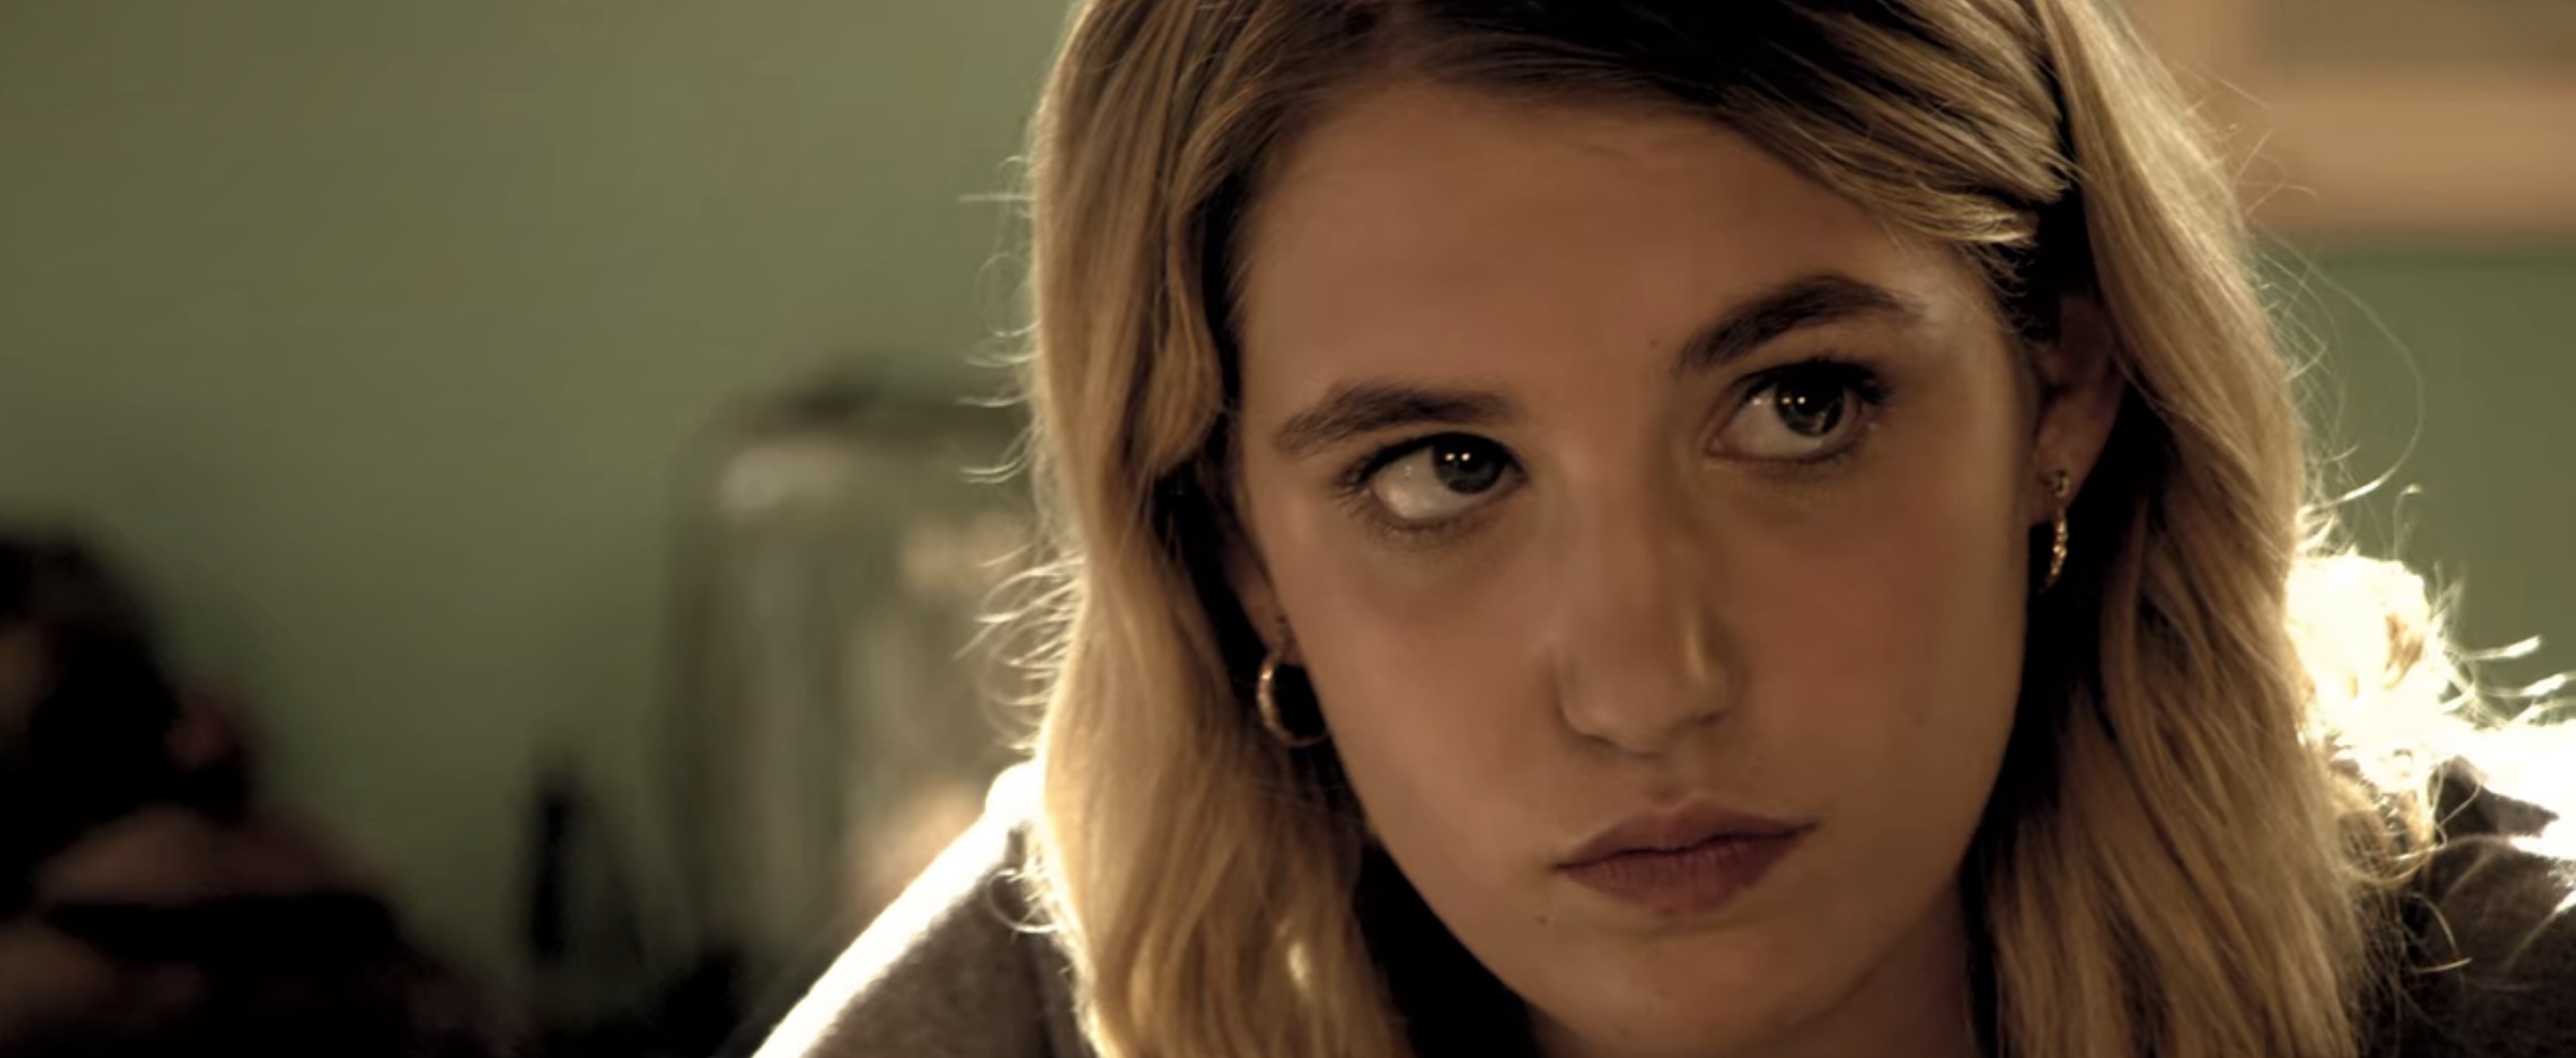 47 Meters Down: Uncaged Cast on Netflix - Sophie Nélisse as Mia